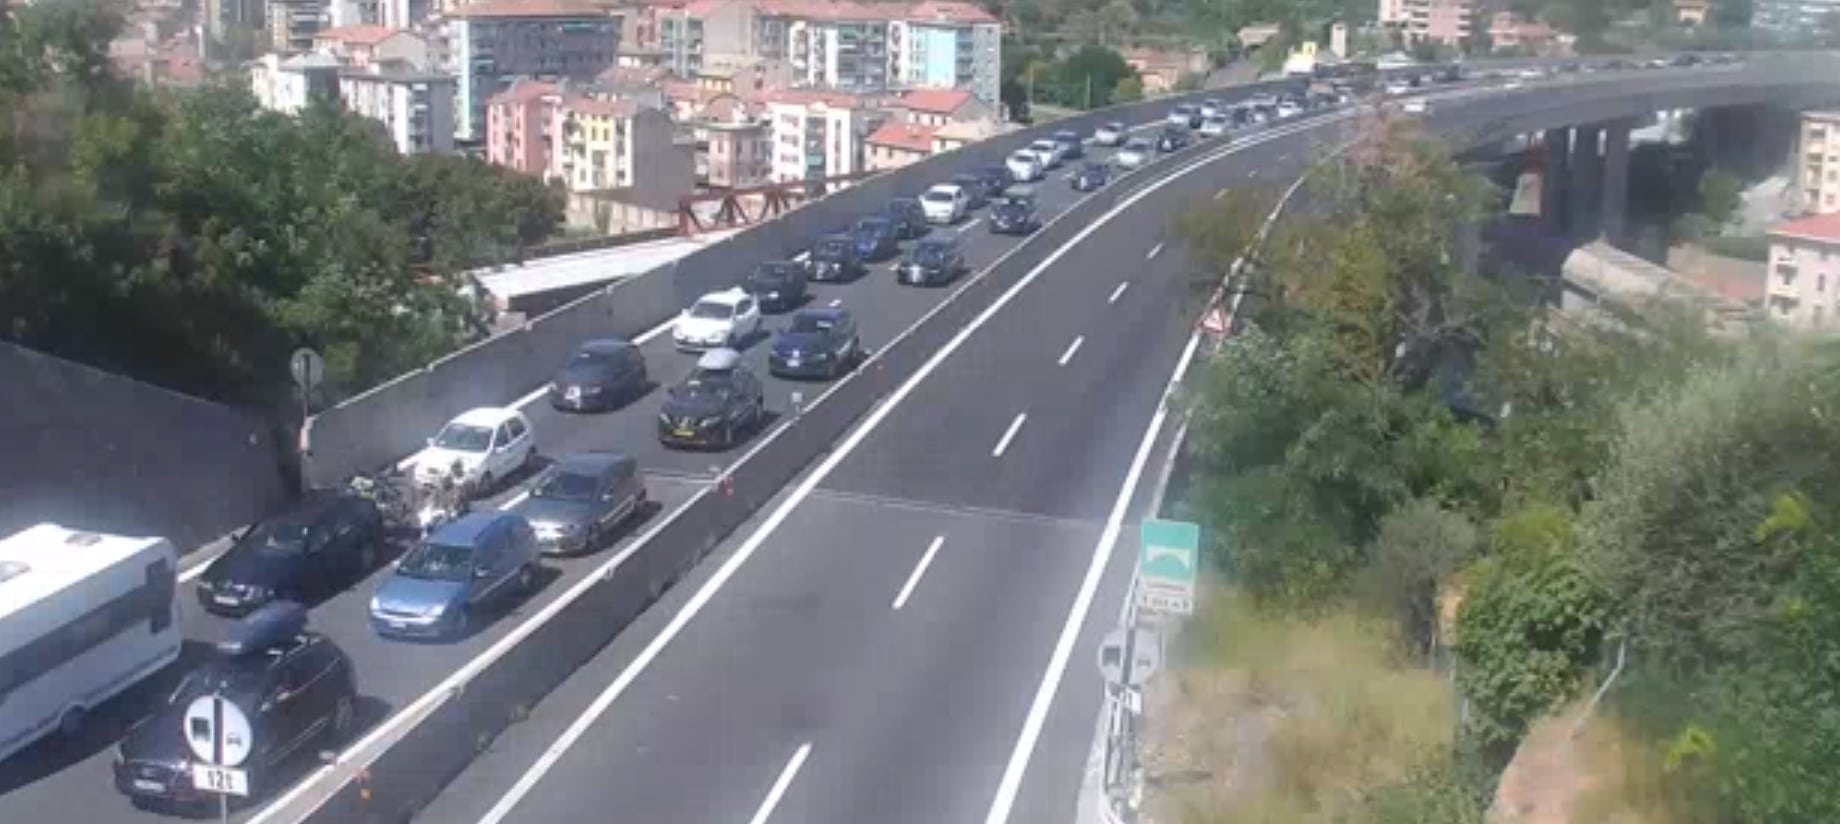 Autostrade, traffico in aumento: A7 chiusa ai mezzi pesanti da Bolzaneto a Ronco